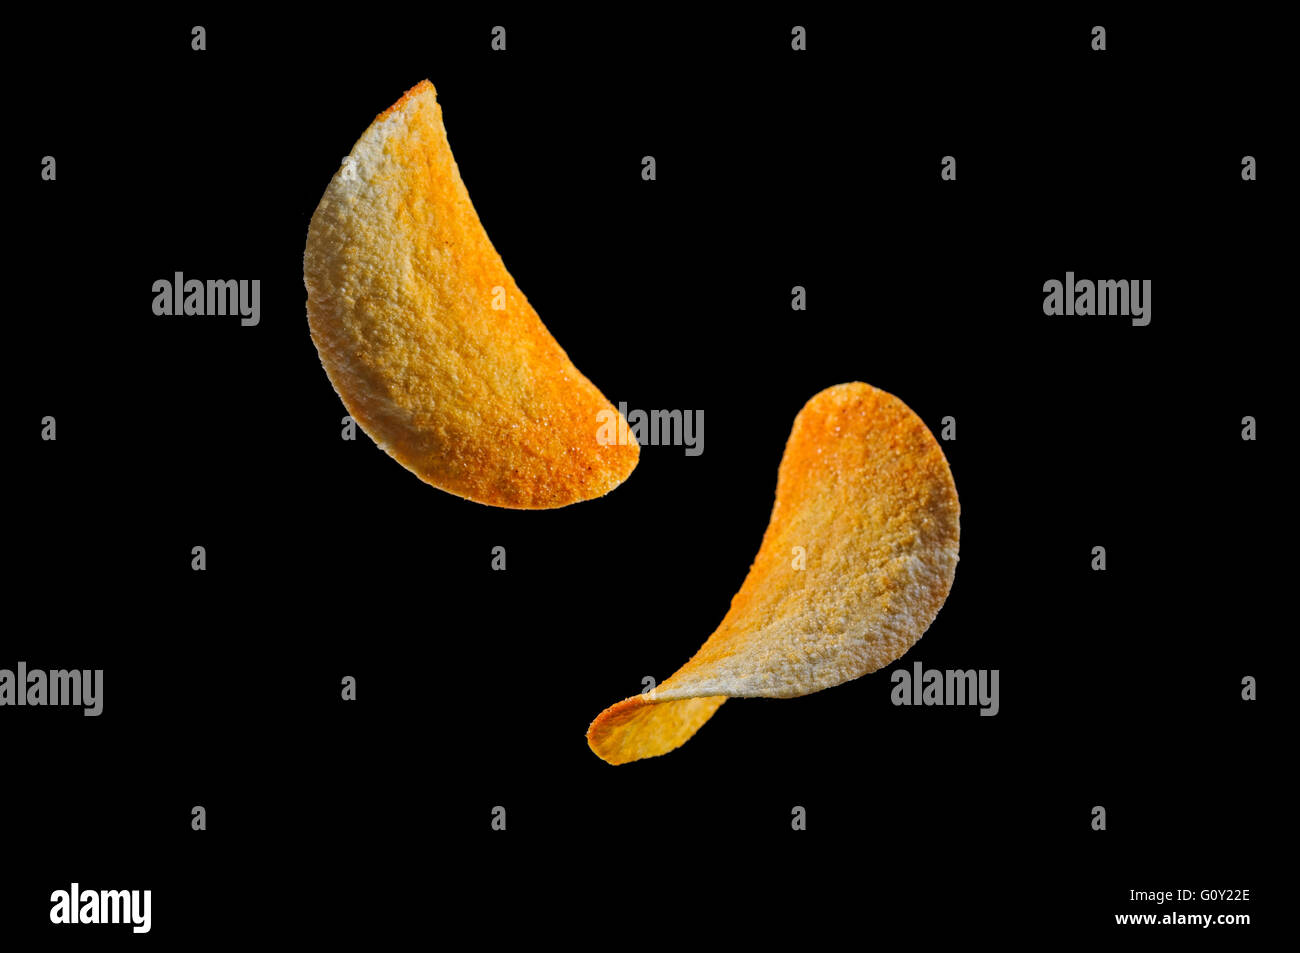 Falling potato saddle-form chips isolated on black background Stock Photo